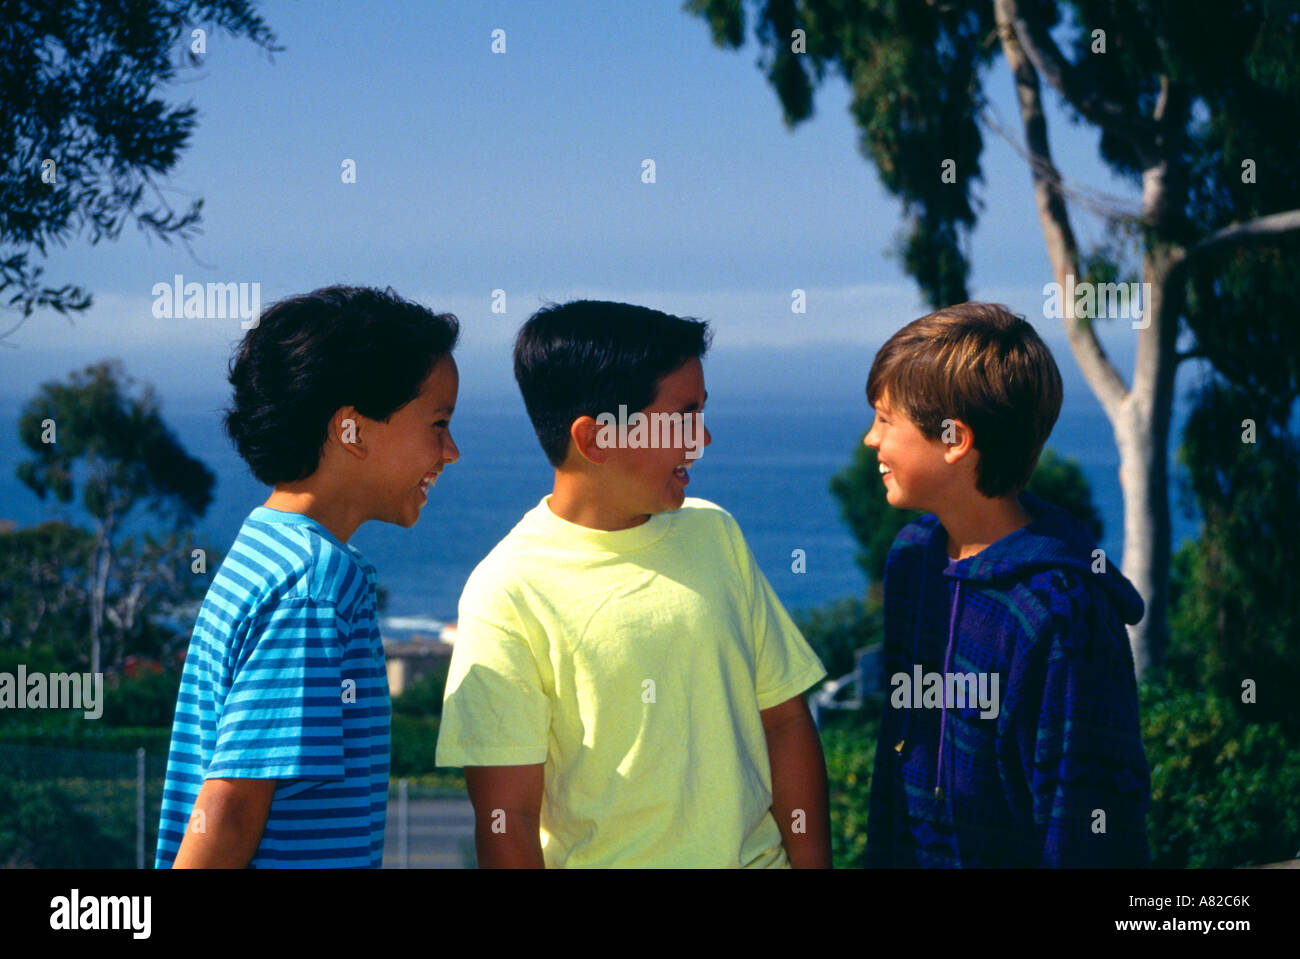 Junge Mensch Leute drei Jungen 11-13 Jahre alten hängen heraus hängenden Park an einem Hang mit Blick auf den Ozean us usa Amerika myrleen Pearson Stockfoto